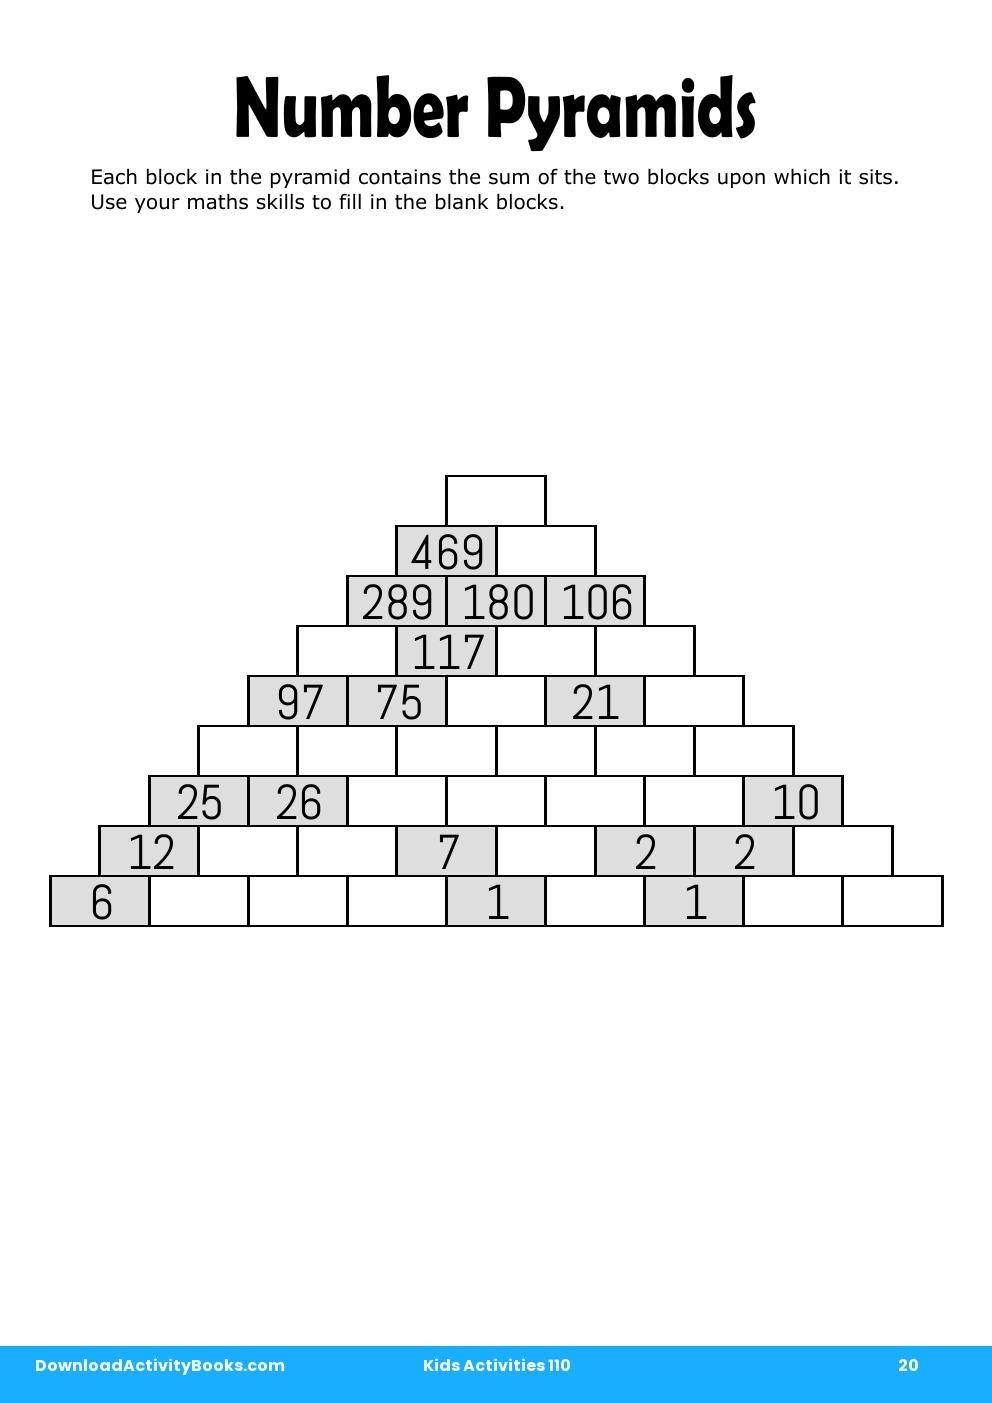 Number Pyramids in Kids Activities 110